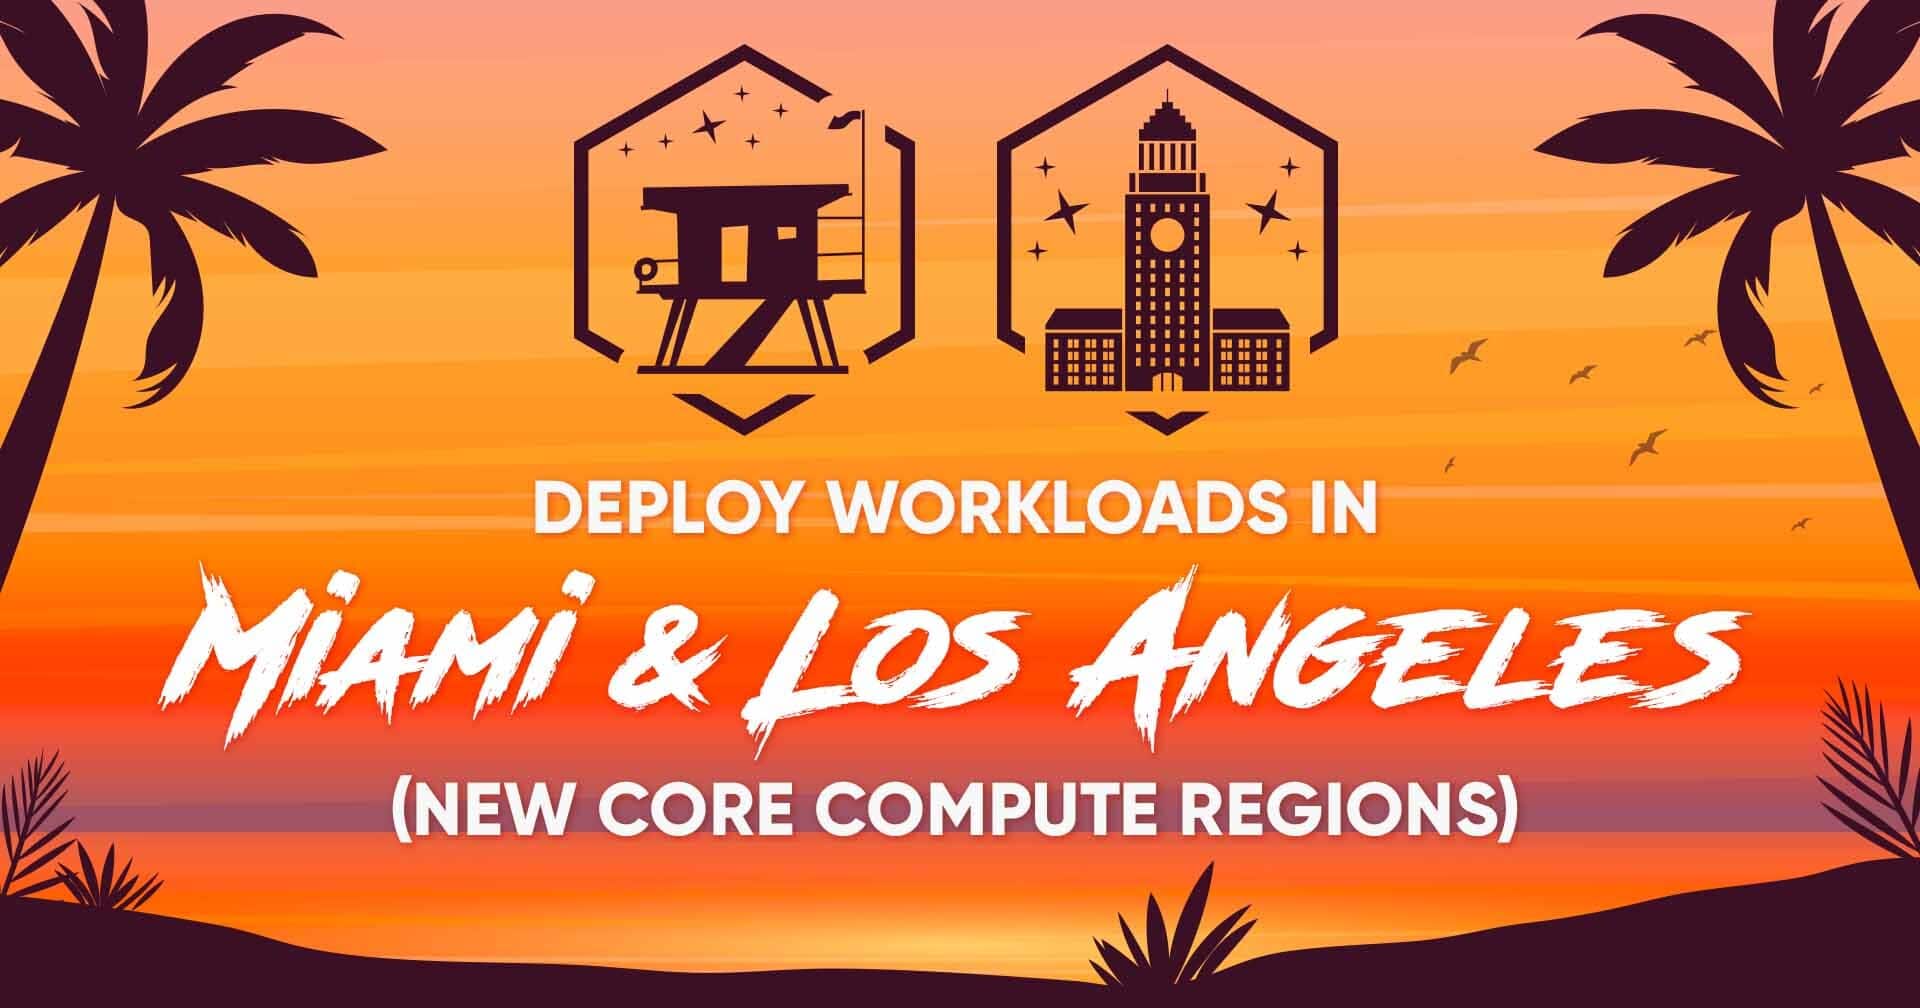 Implemente cargas de trabalho em Miami e Los Angeles com as novas regiões de computação central!